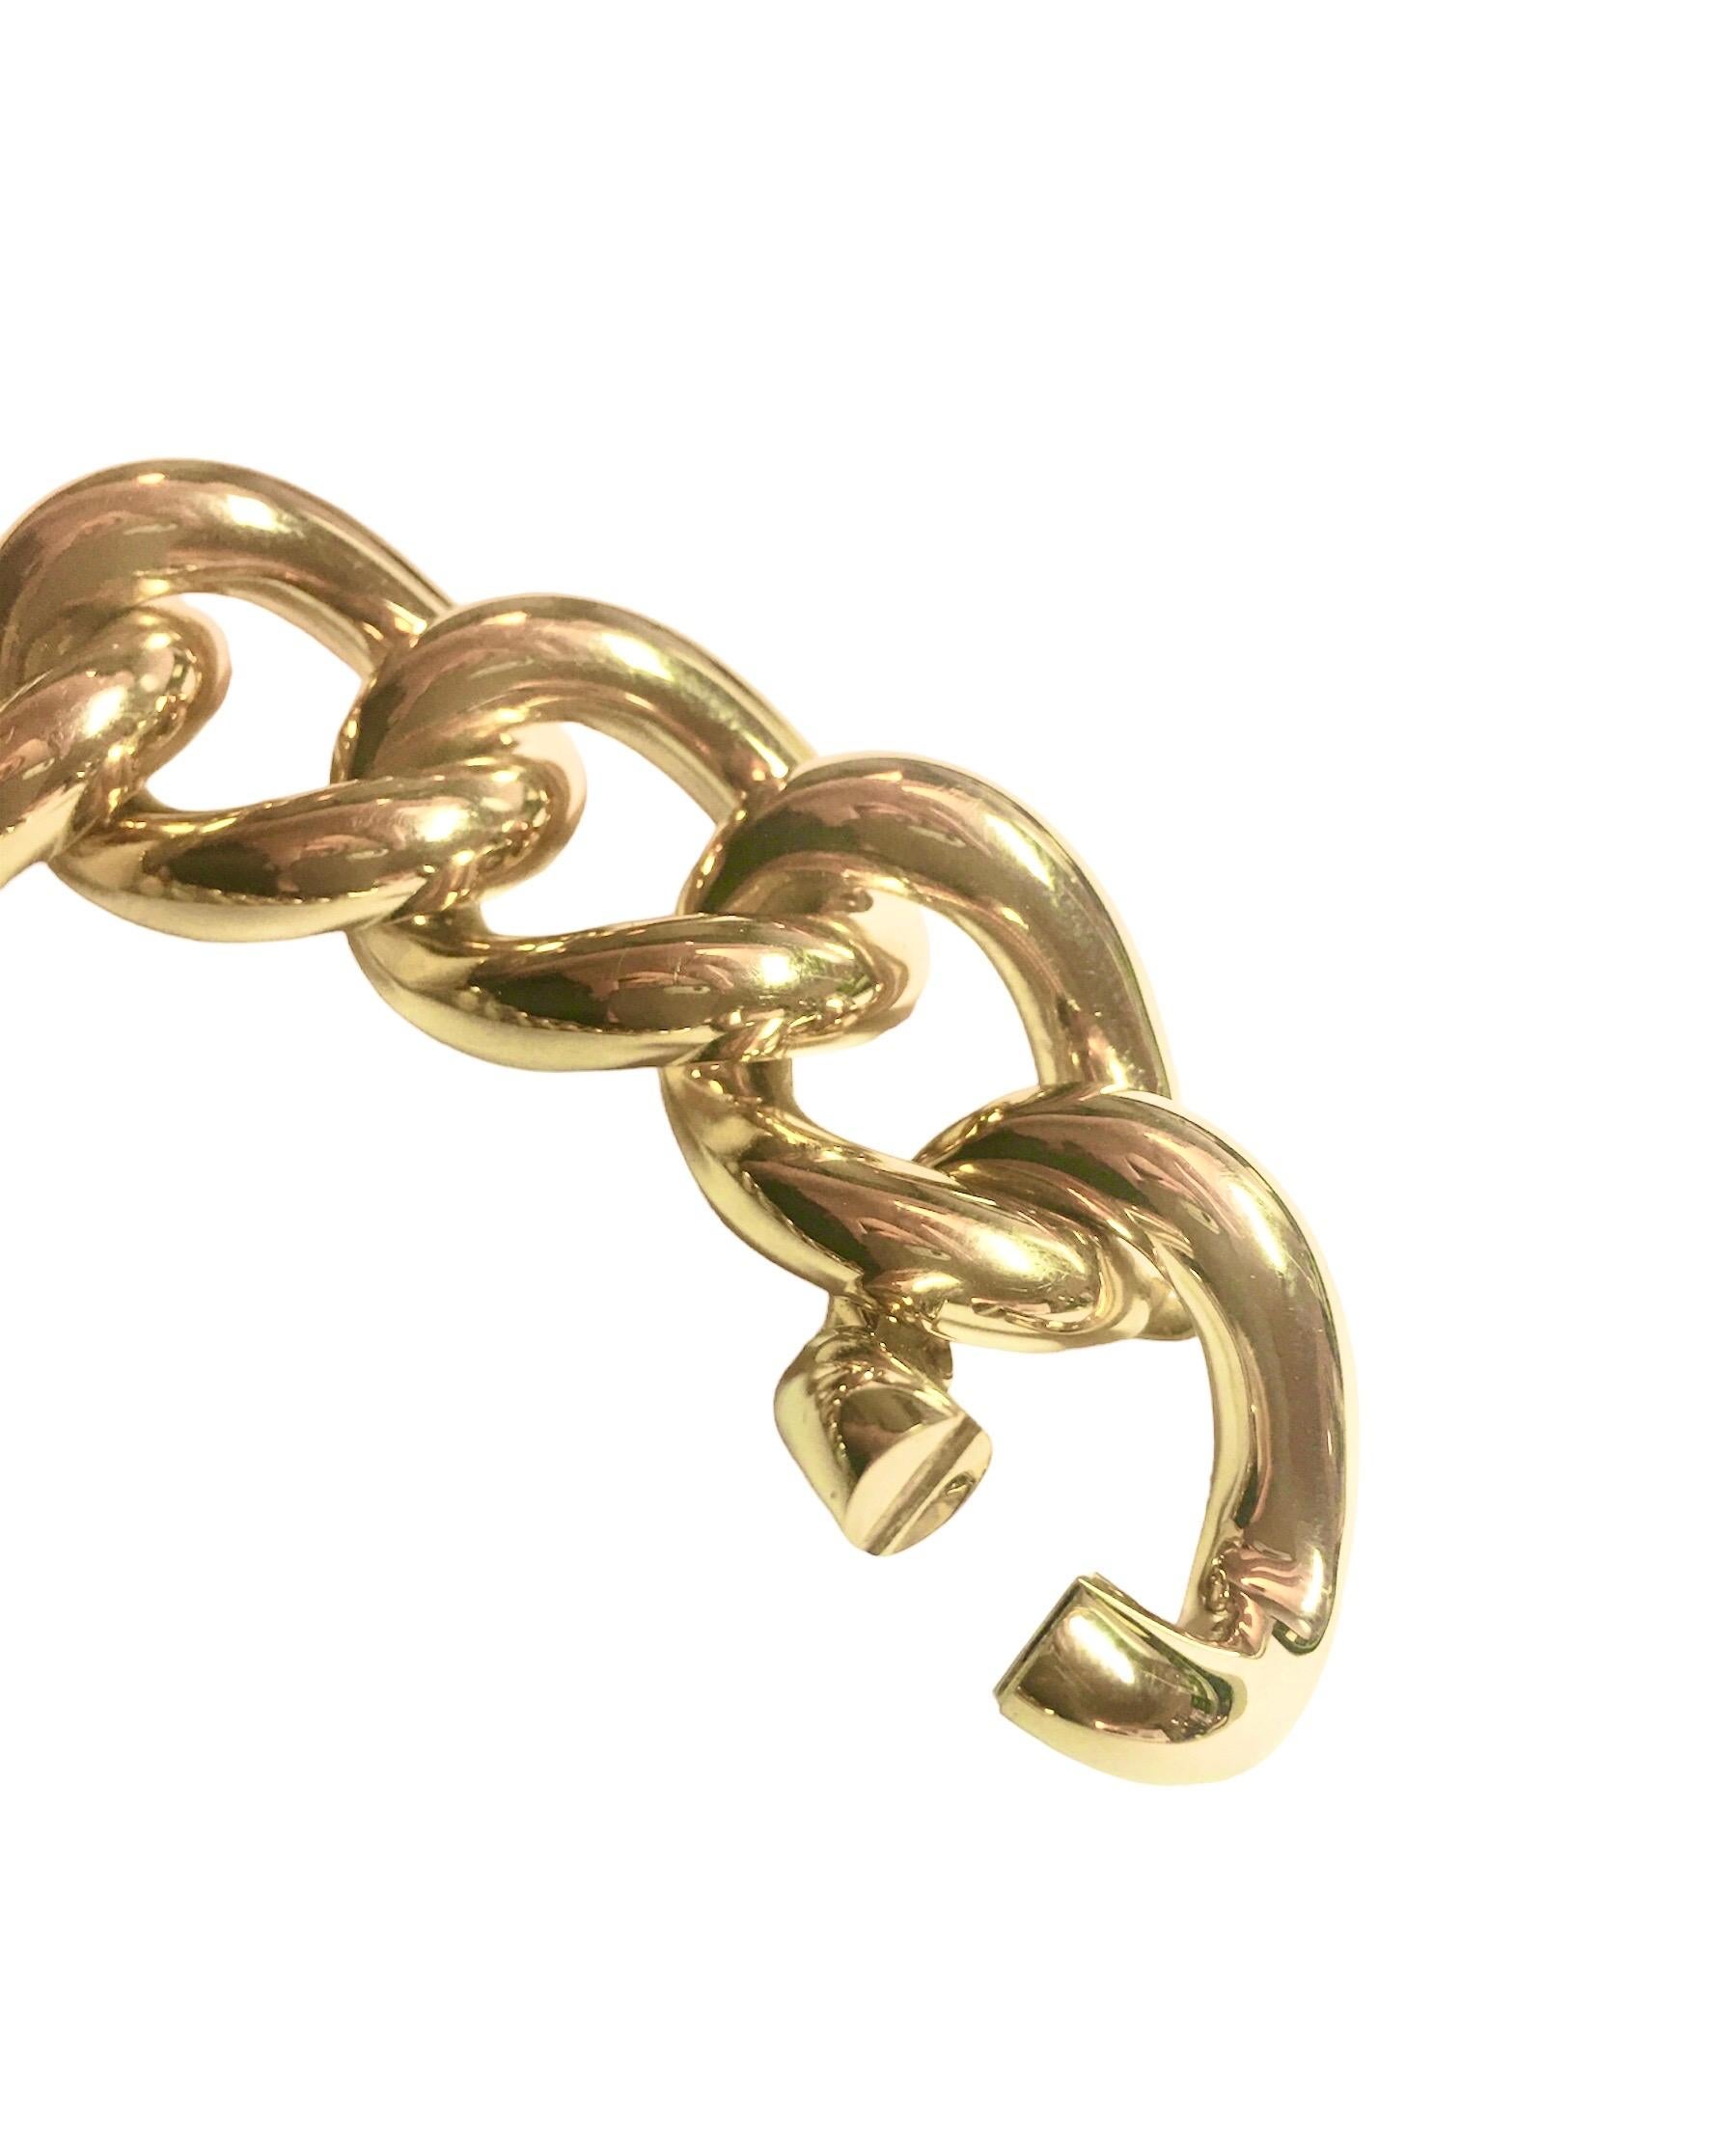 Bracelet classique à groumettes en or jaune 18 kt et diamants blancs 
C'est la collection iconique de Micheletto.
La longueur totale est de 21,00 cm
le poids total de l'or est de 56,90
le poids total des diamants est de ct 1,58 (couleur HG clarté